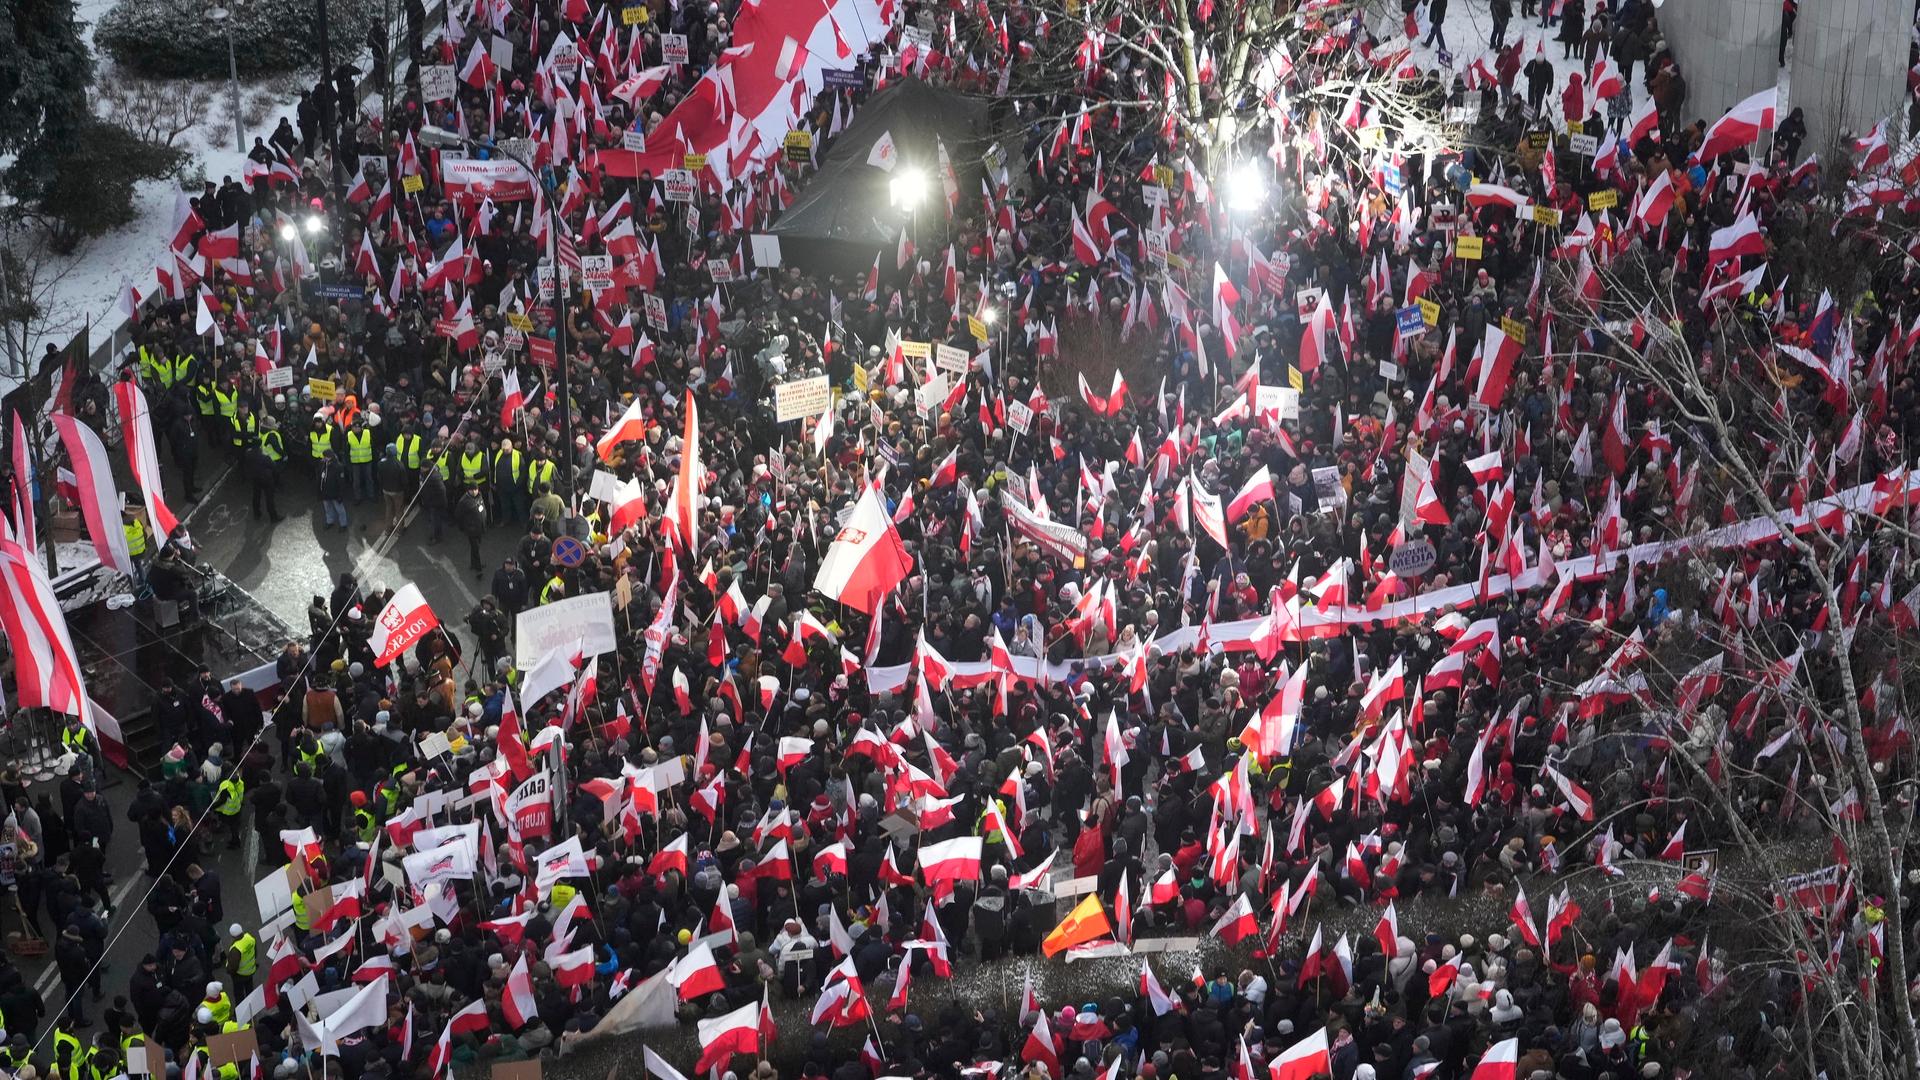 Bild von oben auf die große Menge, die polnische Flaggen schwenkt.